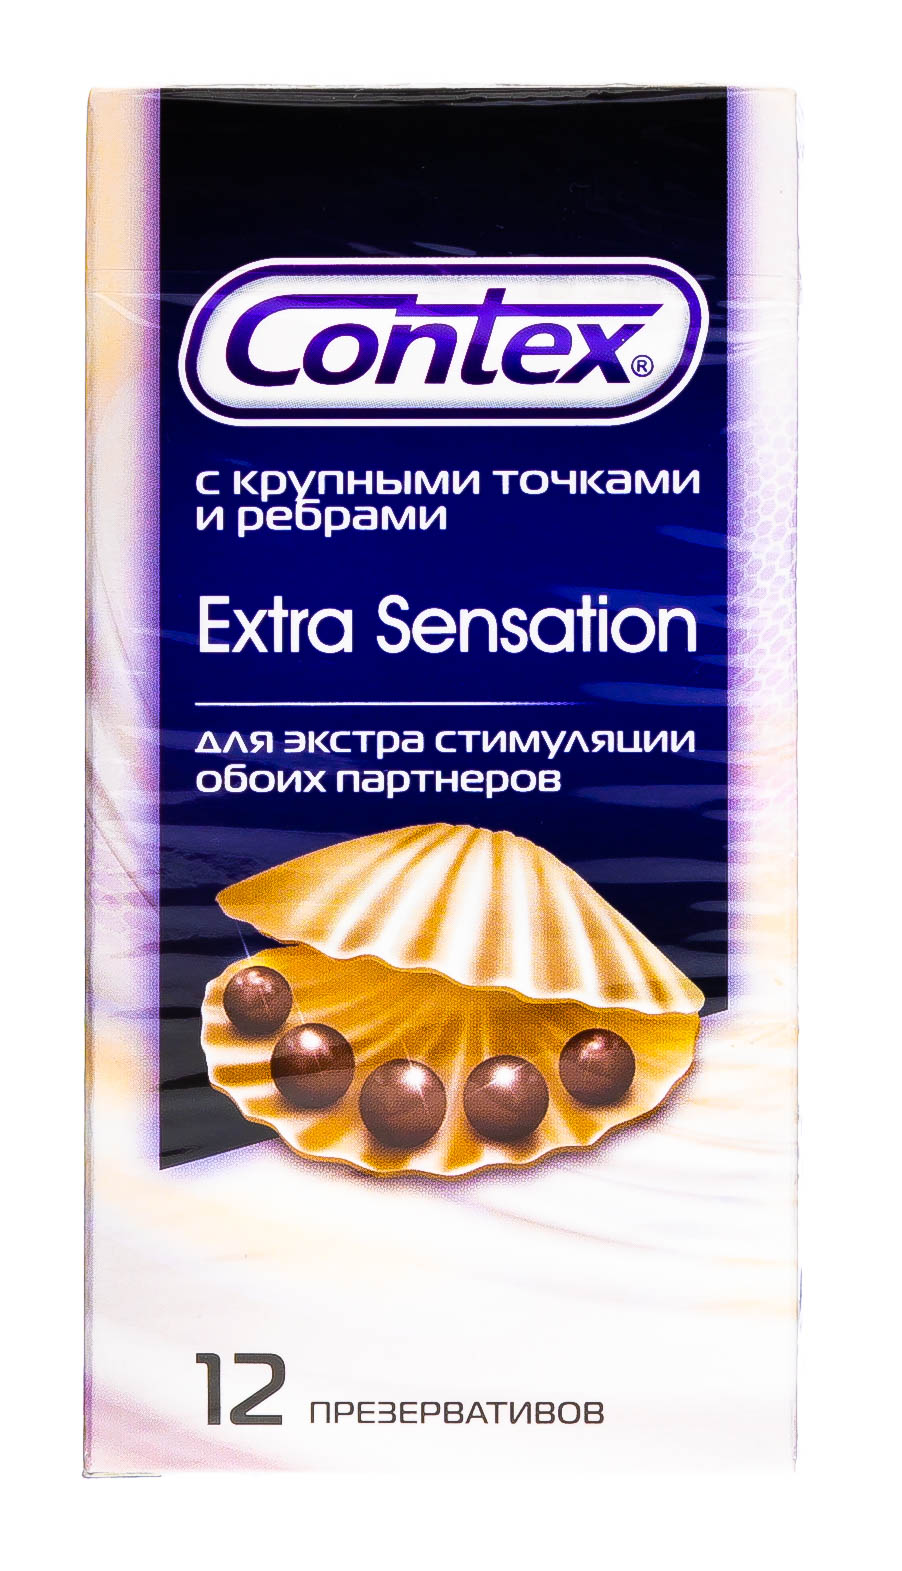 Contex Презервативы Extra Sensation с крупными точками и ребрами, 18 шт (Contex, Презервативы)